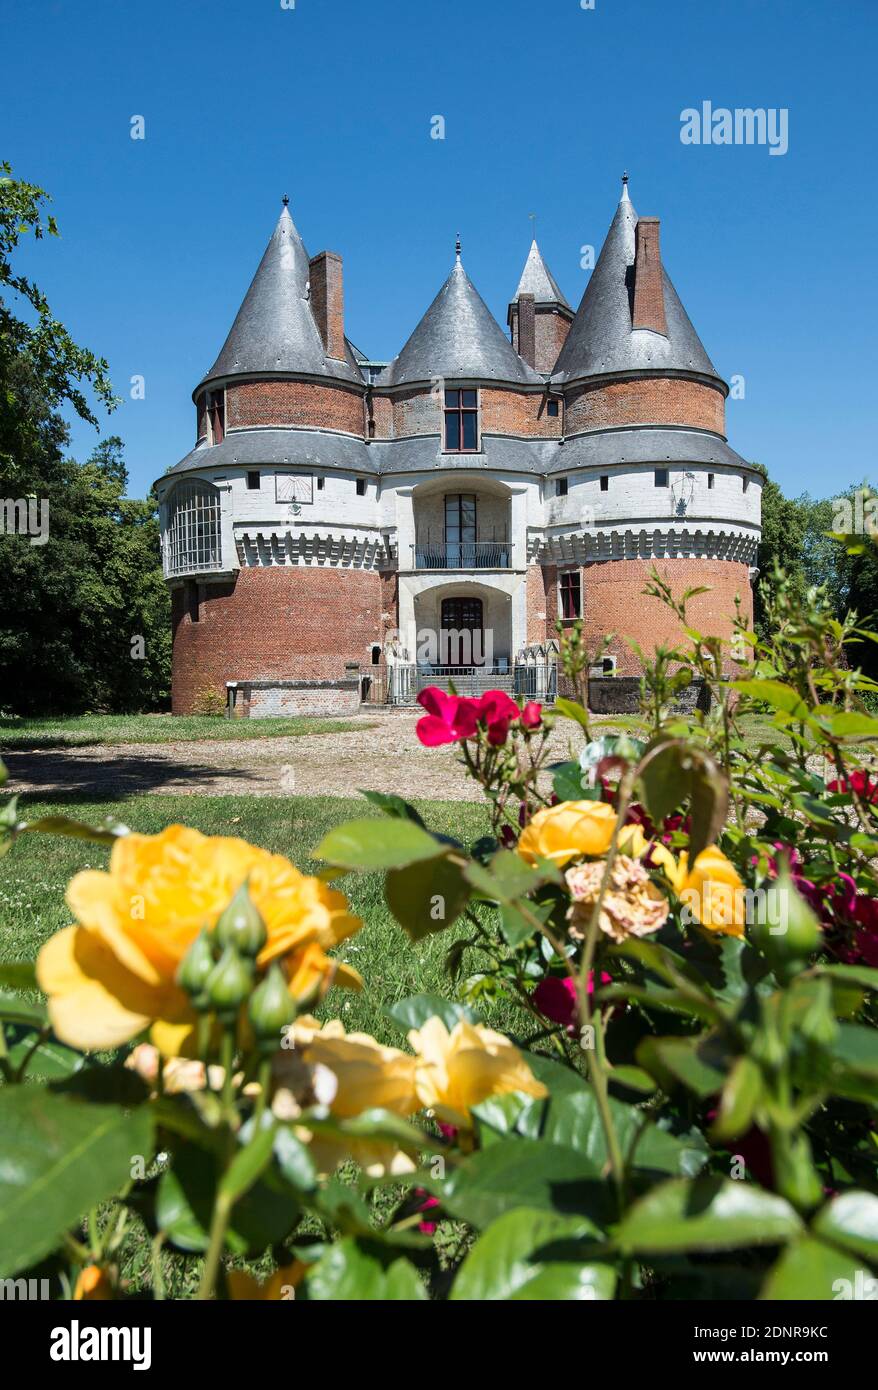 Chateau de Rambures, castello registrato come monumento storico nazionale (francese 'monument historique') Foto Stock